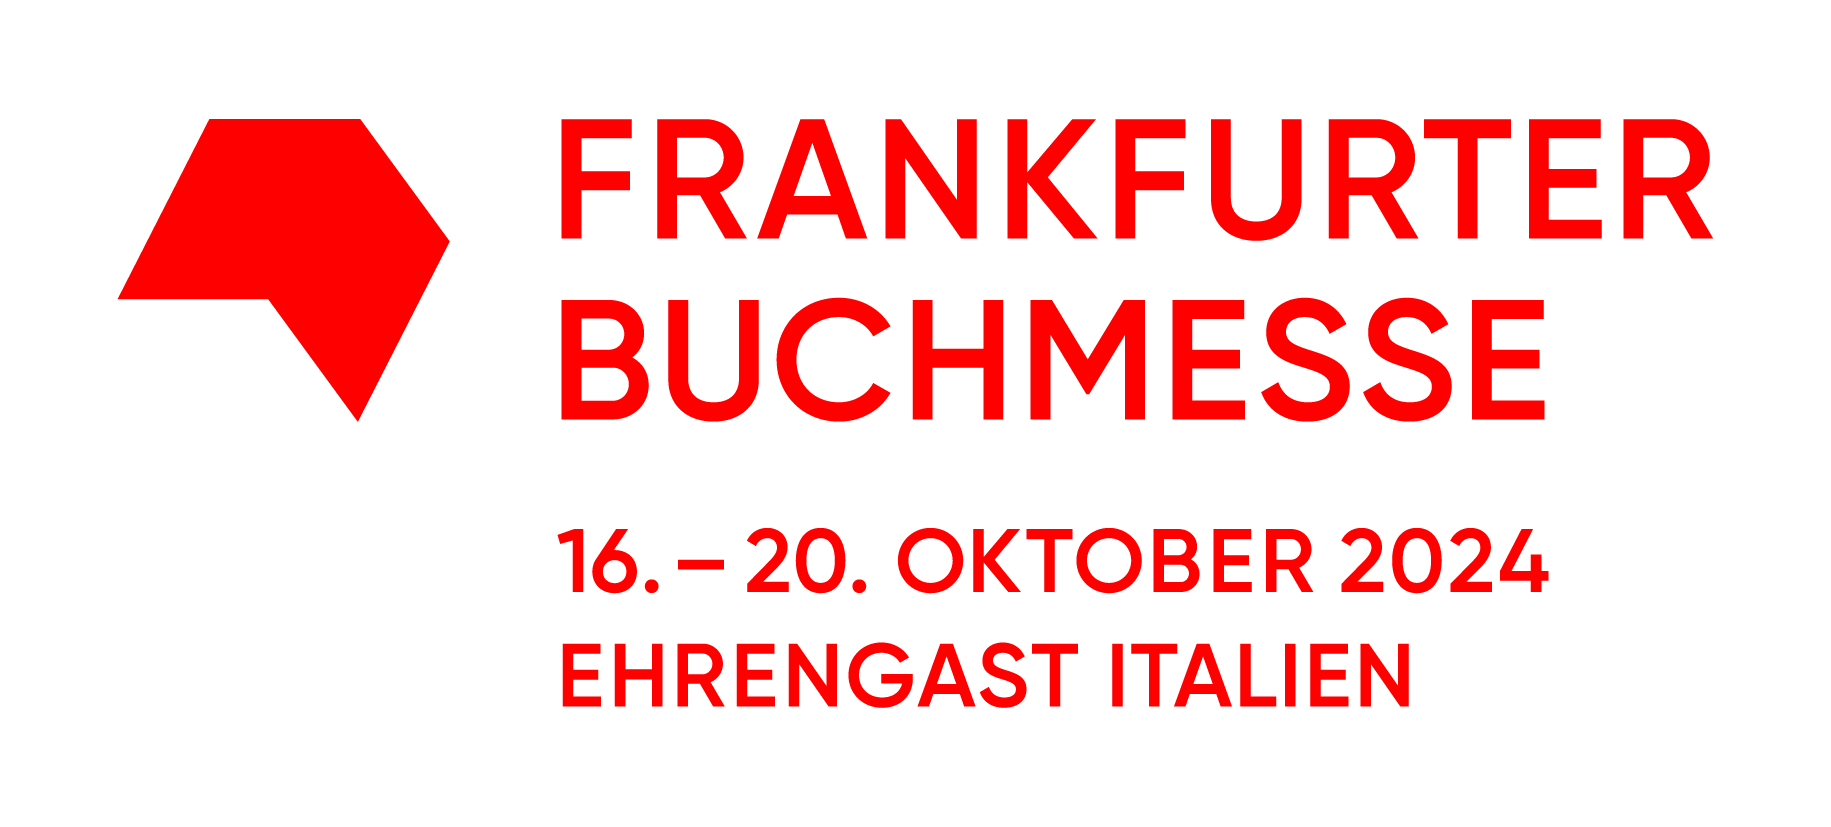 Frankfurter Buchmesse 2024: Vorfreude